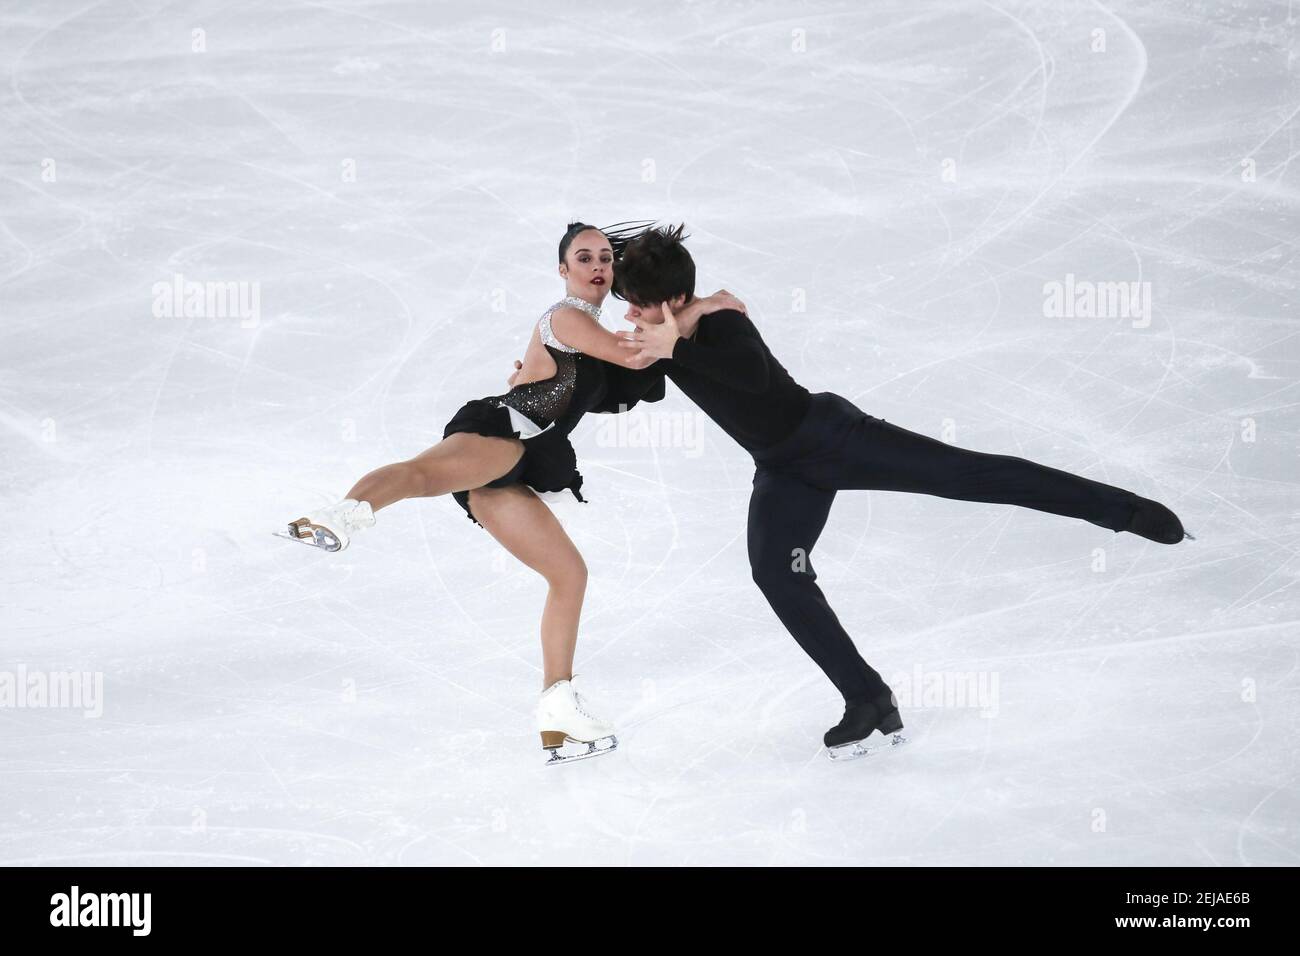 TUBA Giulia y TUBA Andrea de Italia compiten en Patinaje artístico: Baile de hielo Danza durante 4 días de Juegos Olímpicos de la Juventud de Invierno Lausana 2020 en Patinaje Arena